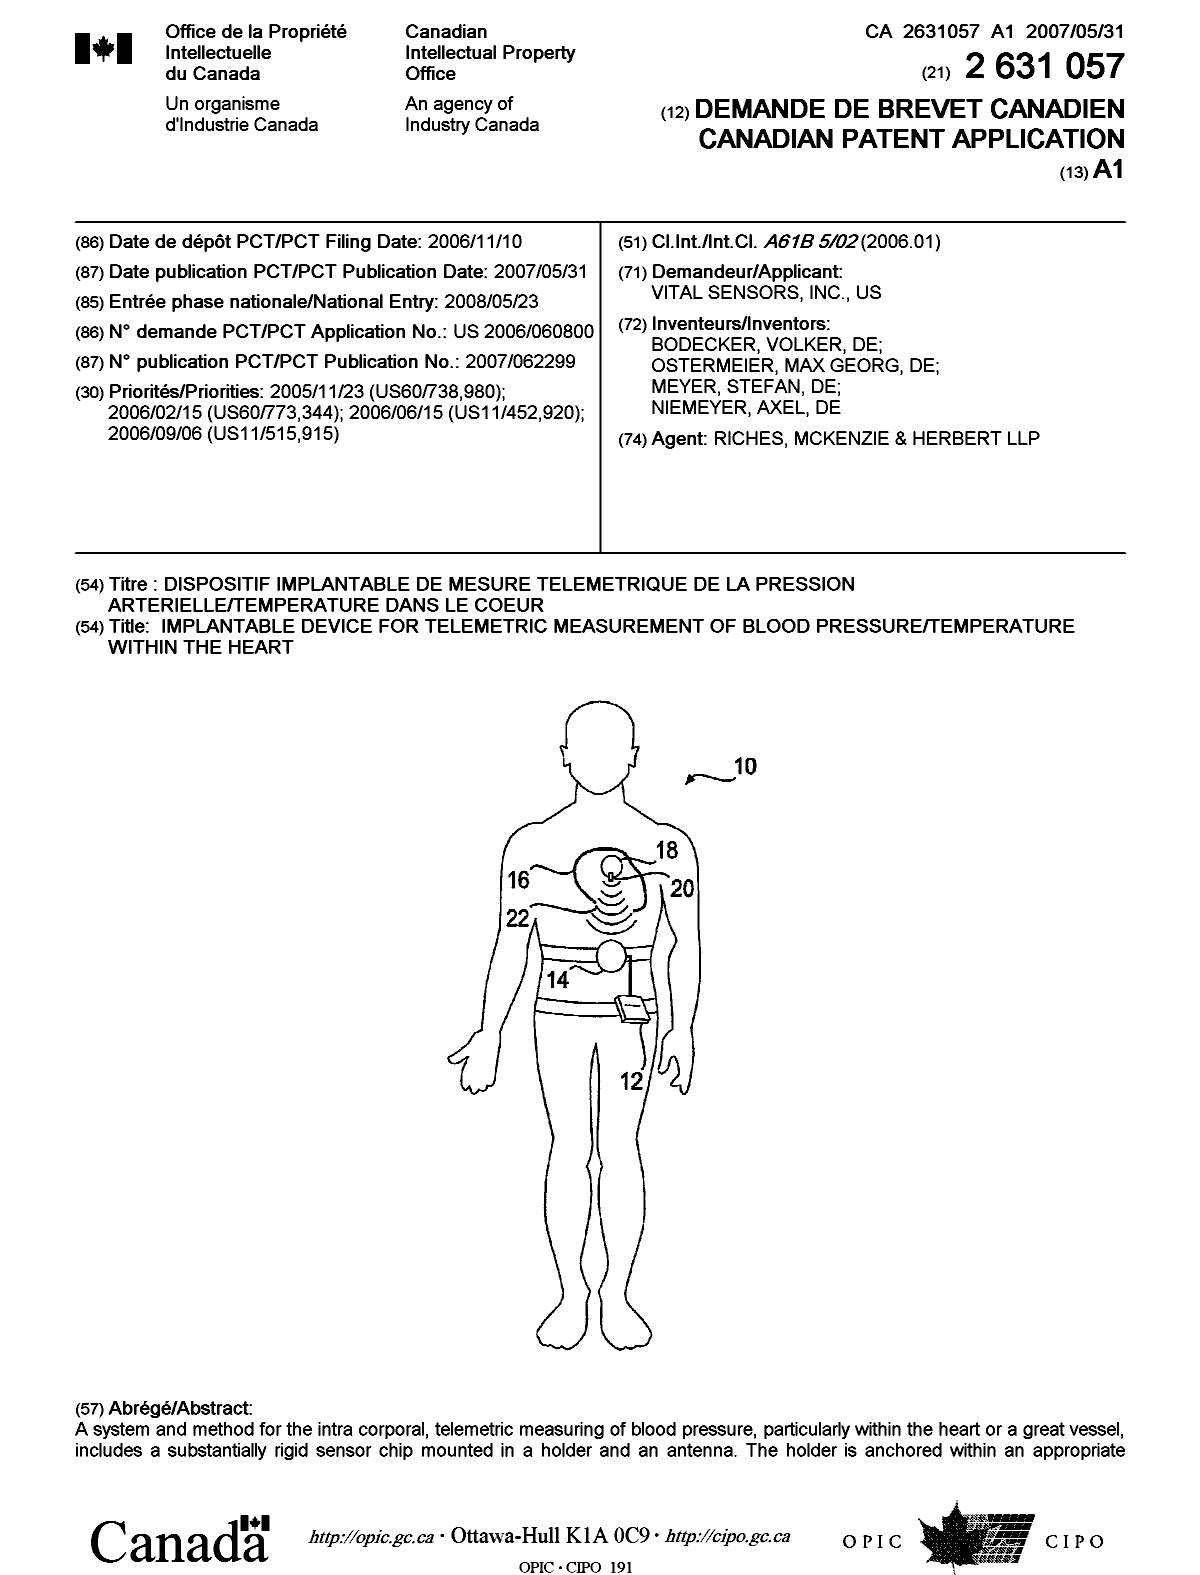 Document de brevet canadien 2631057. Page couverture 20080909. Image 1 de 2